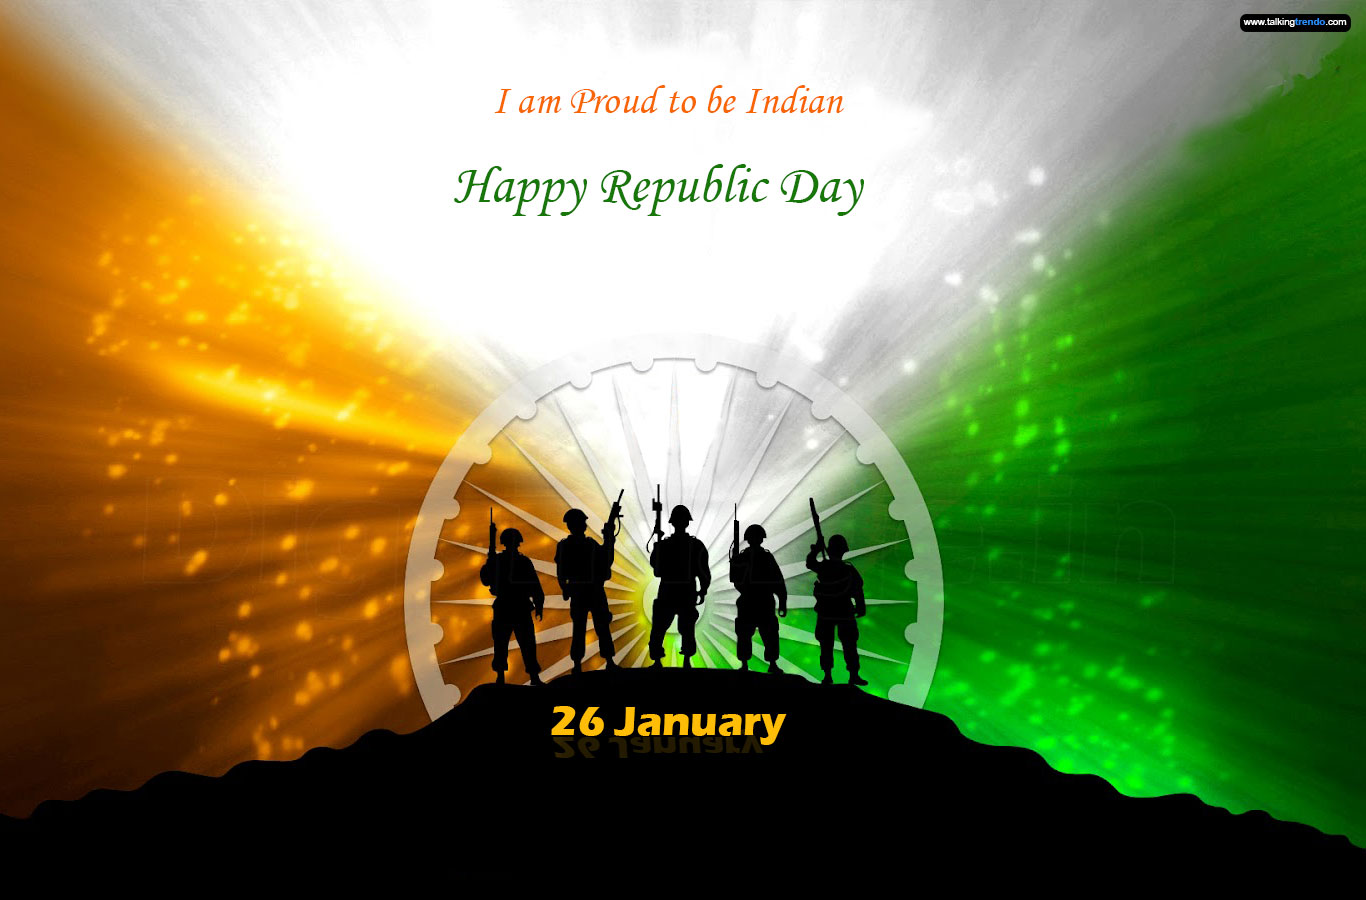 http://3.bp.blogspot.com/-Ol2jQo4NTzU/UQwE2a5EpxI/AAAAAAAAAis/FaQv4CDhfyQ/s1600/January-26-th-happy-republic-day-2013-jai-bharat-indian-greetings.jpg